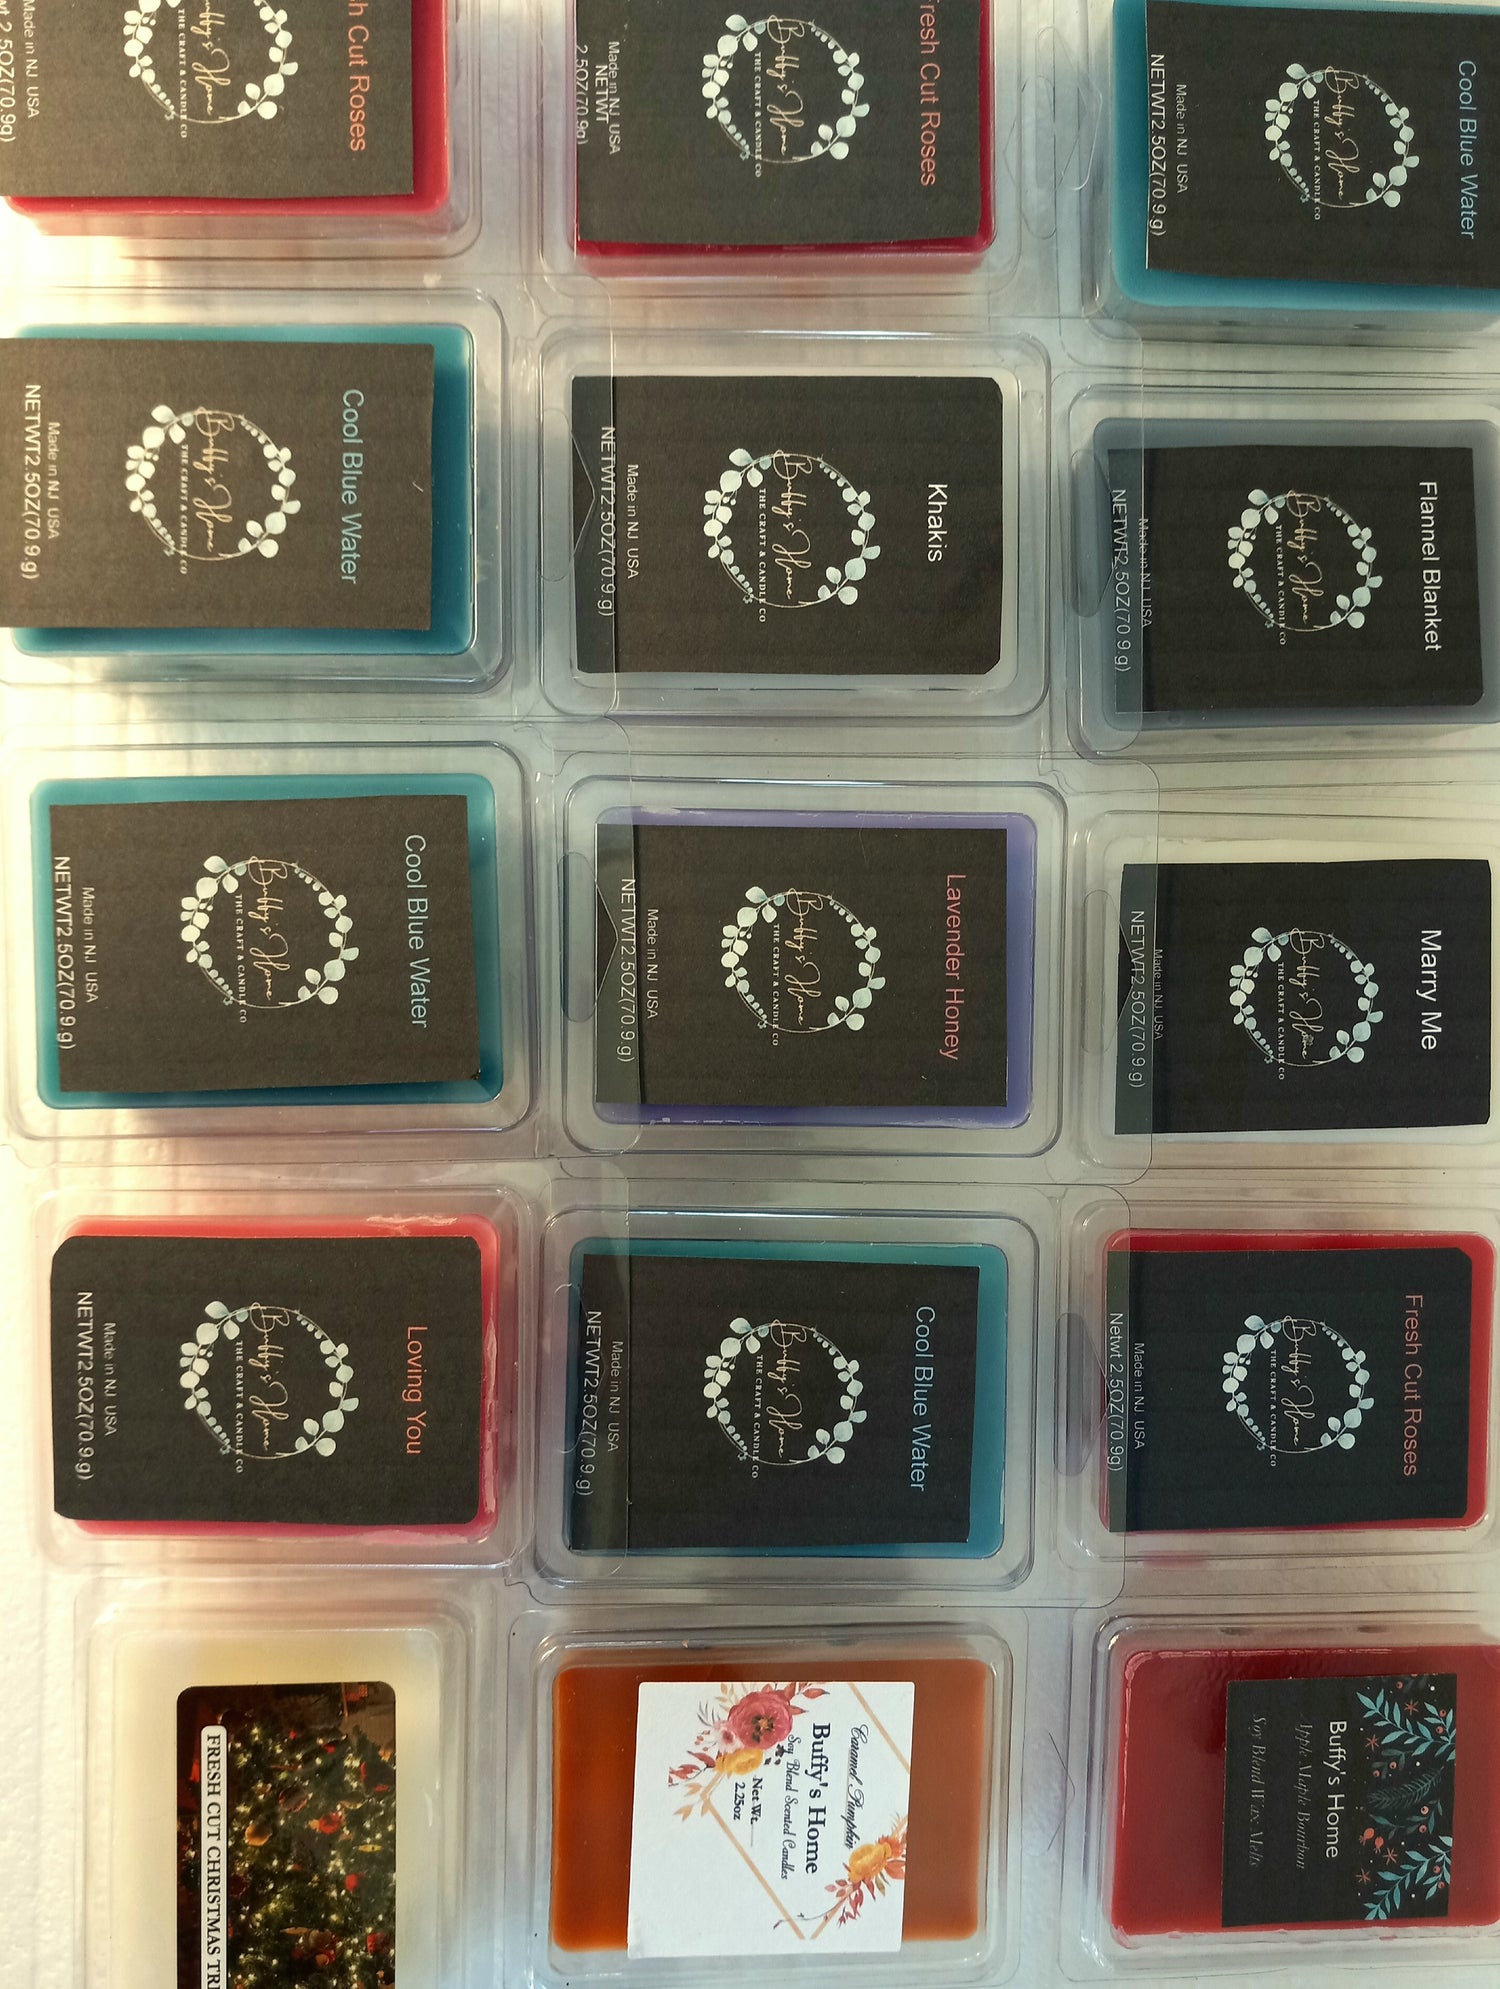 Febreze Wax Melts, Wax Melt Warmer Cubes, Wax Warmer Cubes, Pack of 6, 3  Ocean Scent and 3 Ember Scent, 6 Wax Melt Cubes per Pack, Air Freshener